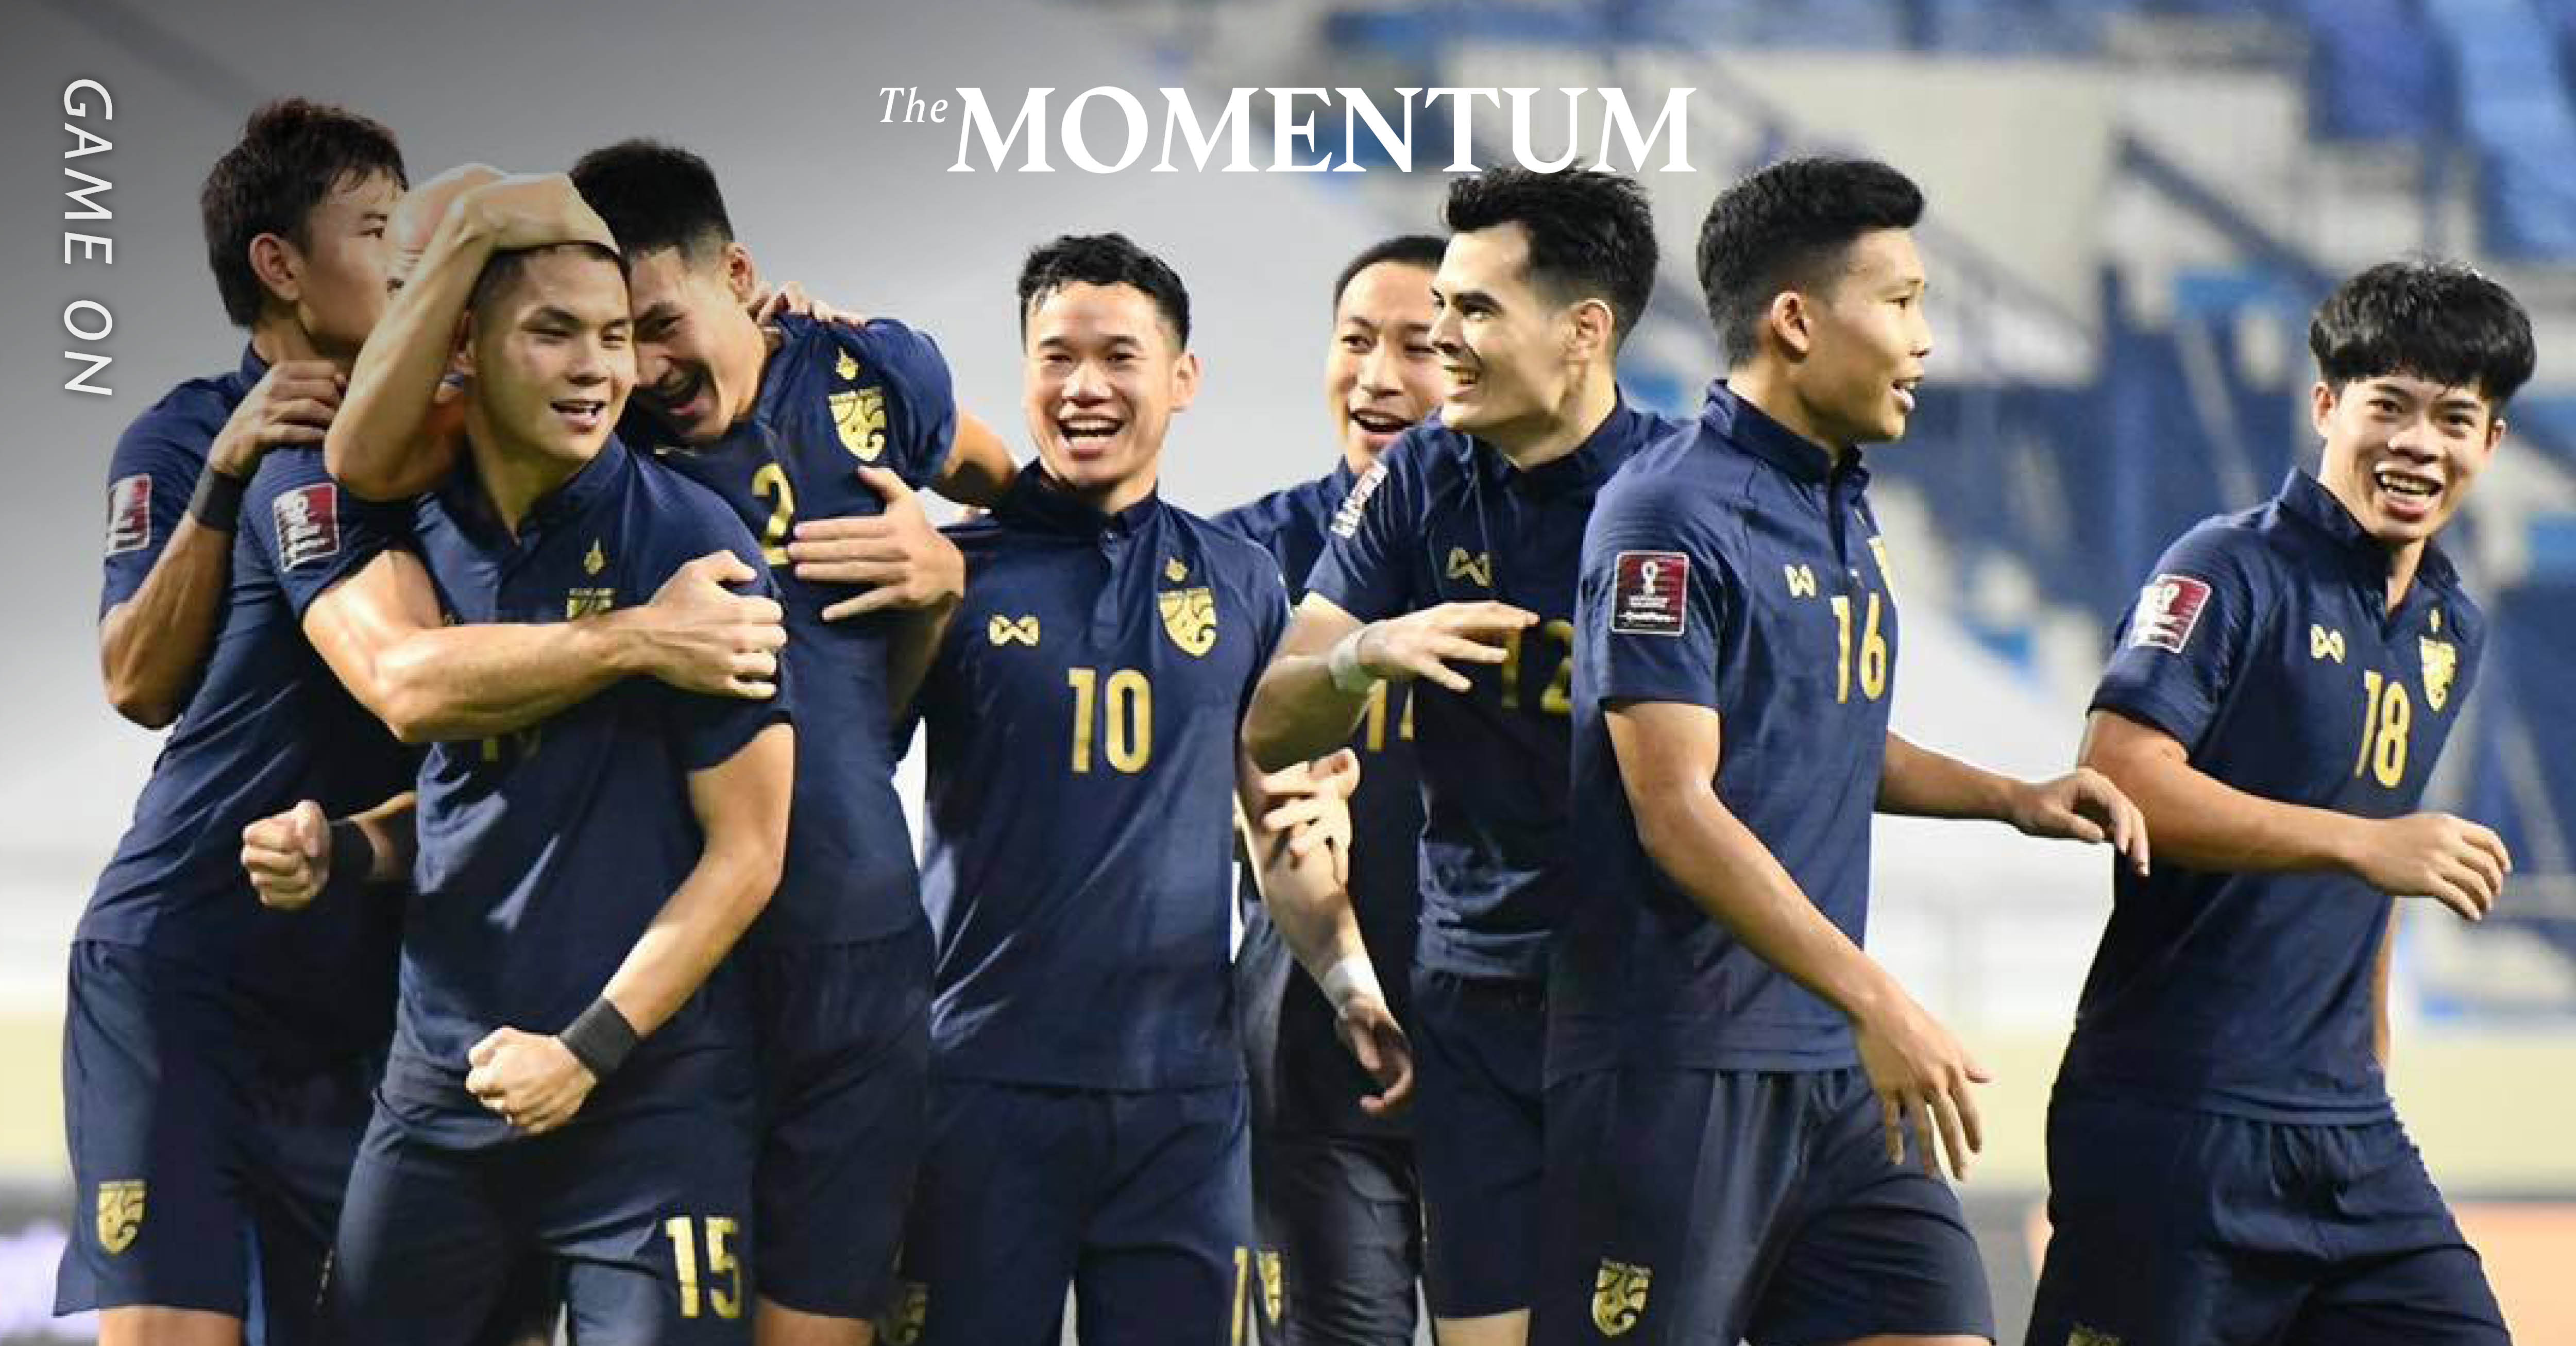 ความล้มเหลวของ 'ทีมชาติไทย' ในฟุตบอลโลก 2022 รอบคัดเลือก:  ปัญหาที่ทุกฝ่ายต้องร่วมกันรับผิดชอบ